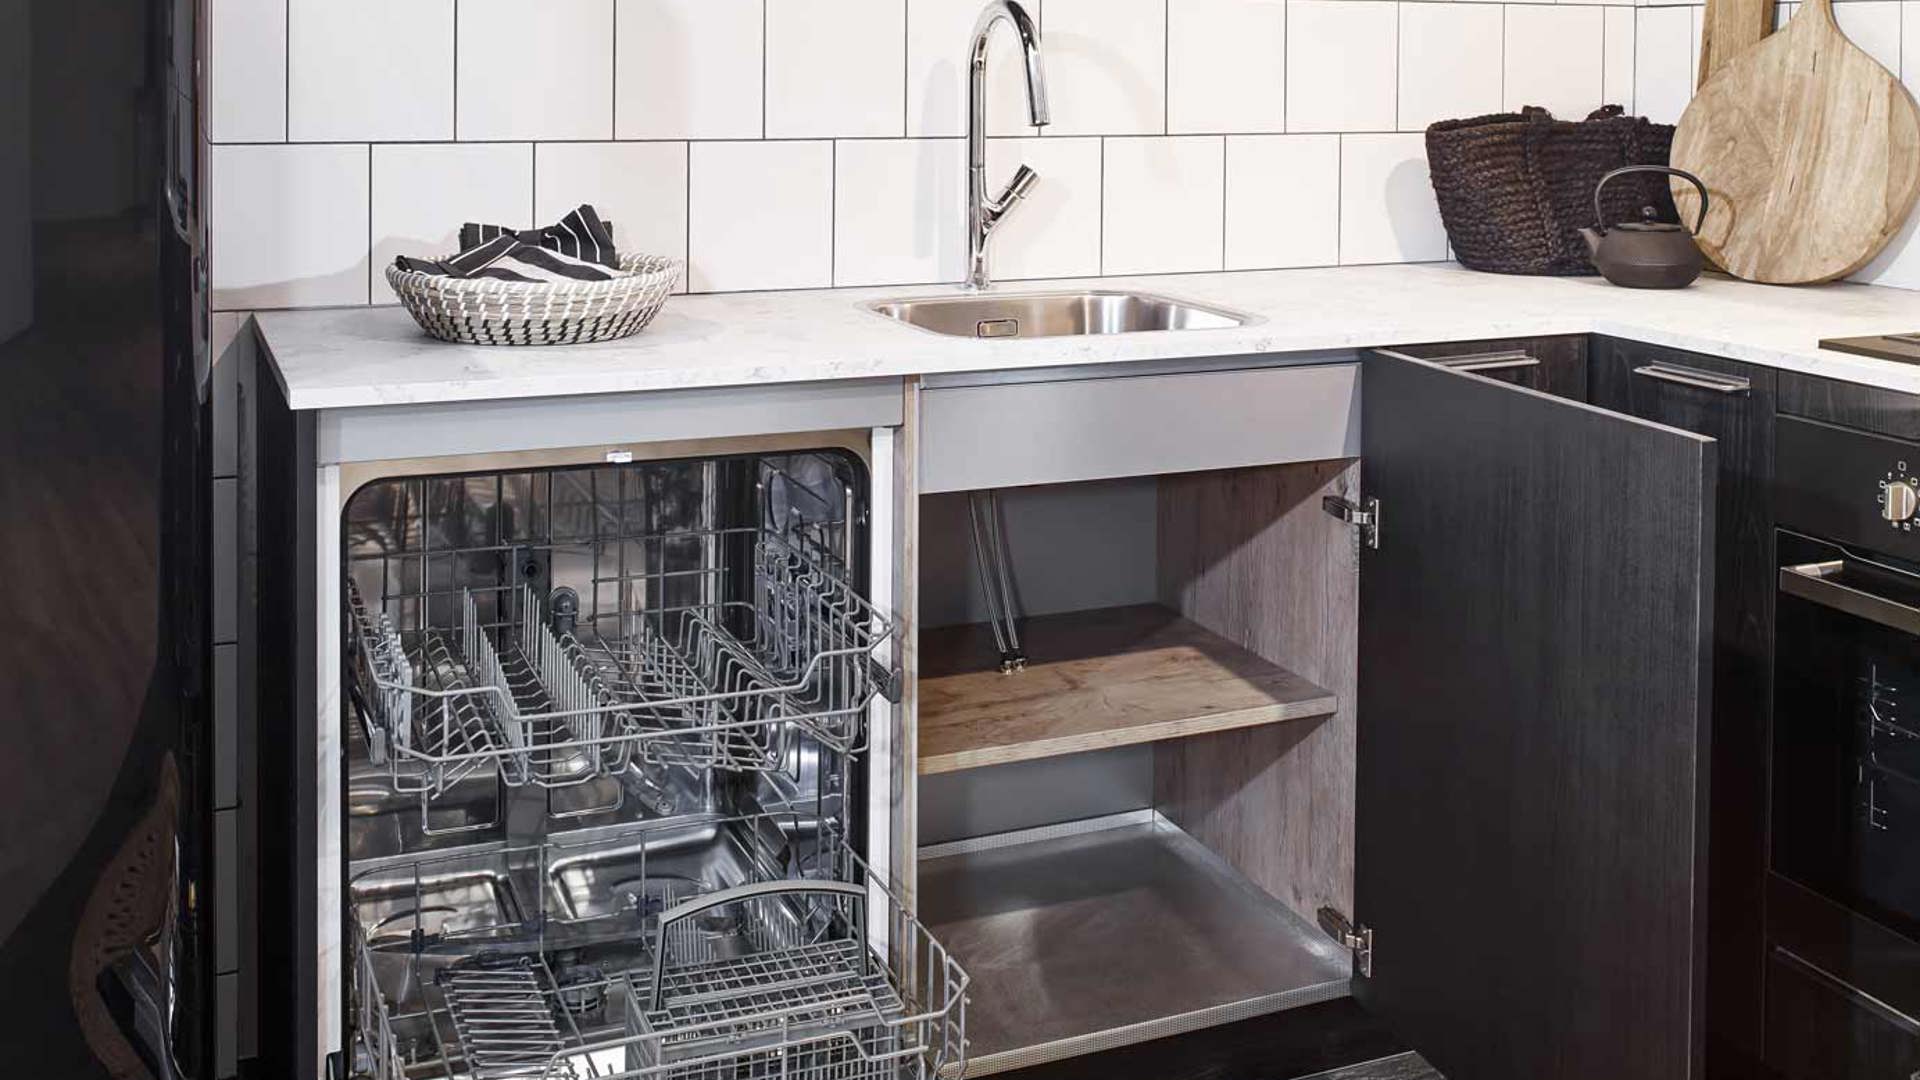 Zwarte Scandinavische keuken in de kleuren zwart en wit, inclusief apparatuur